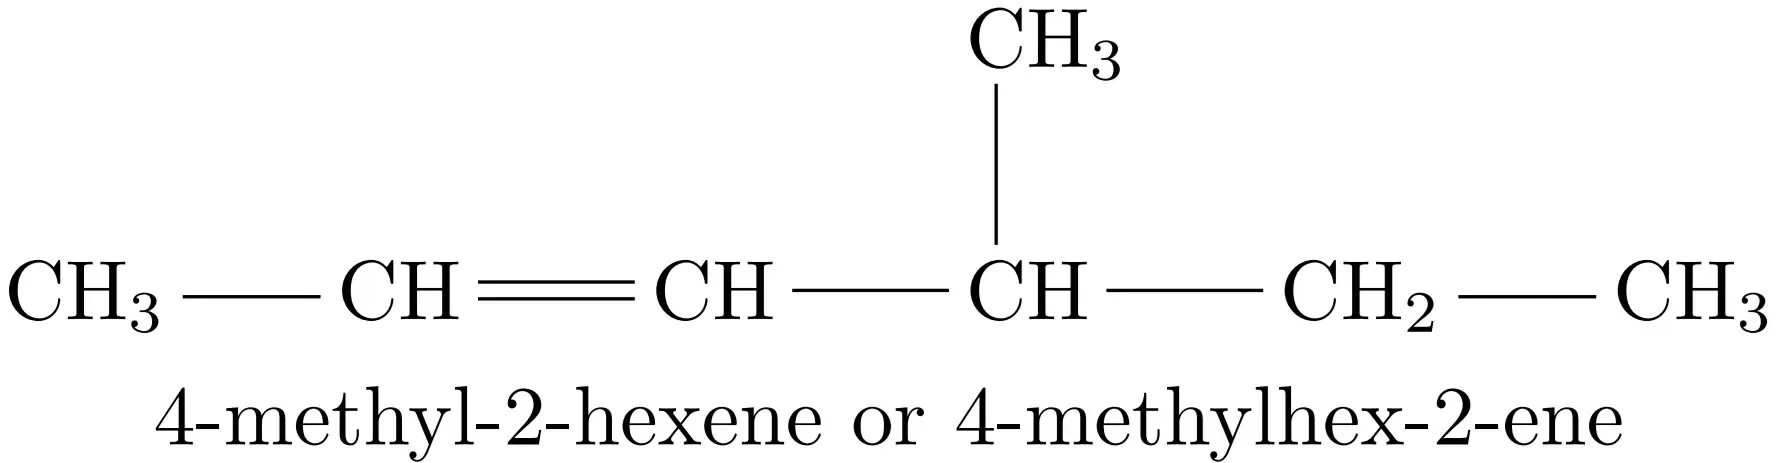 4-ميثيل-2-هكسين أو 4-ميثيل-هكس-2-ين